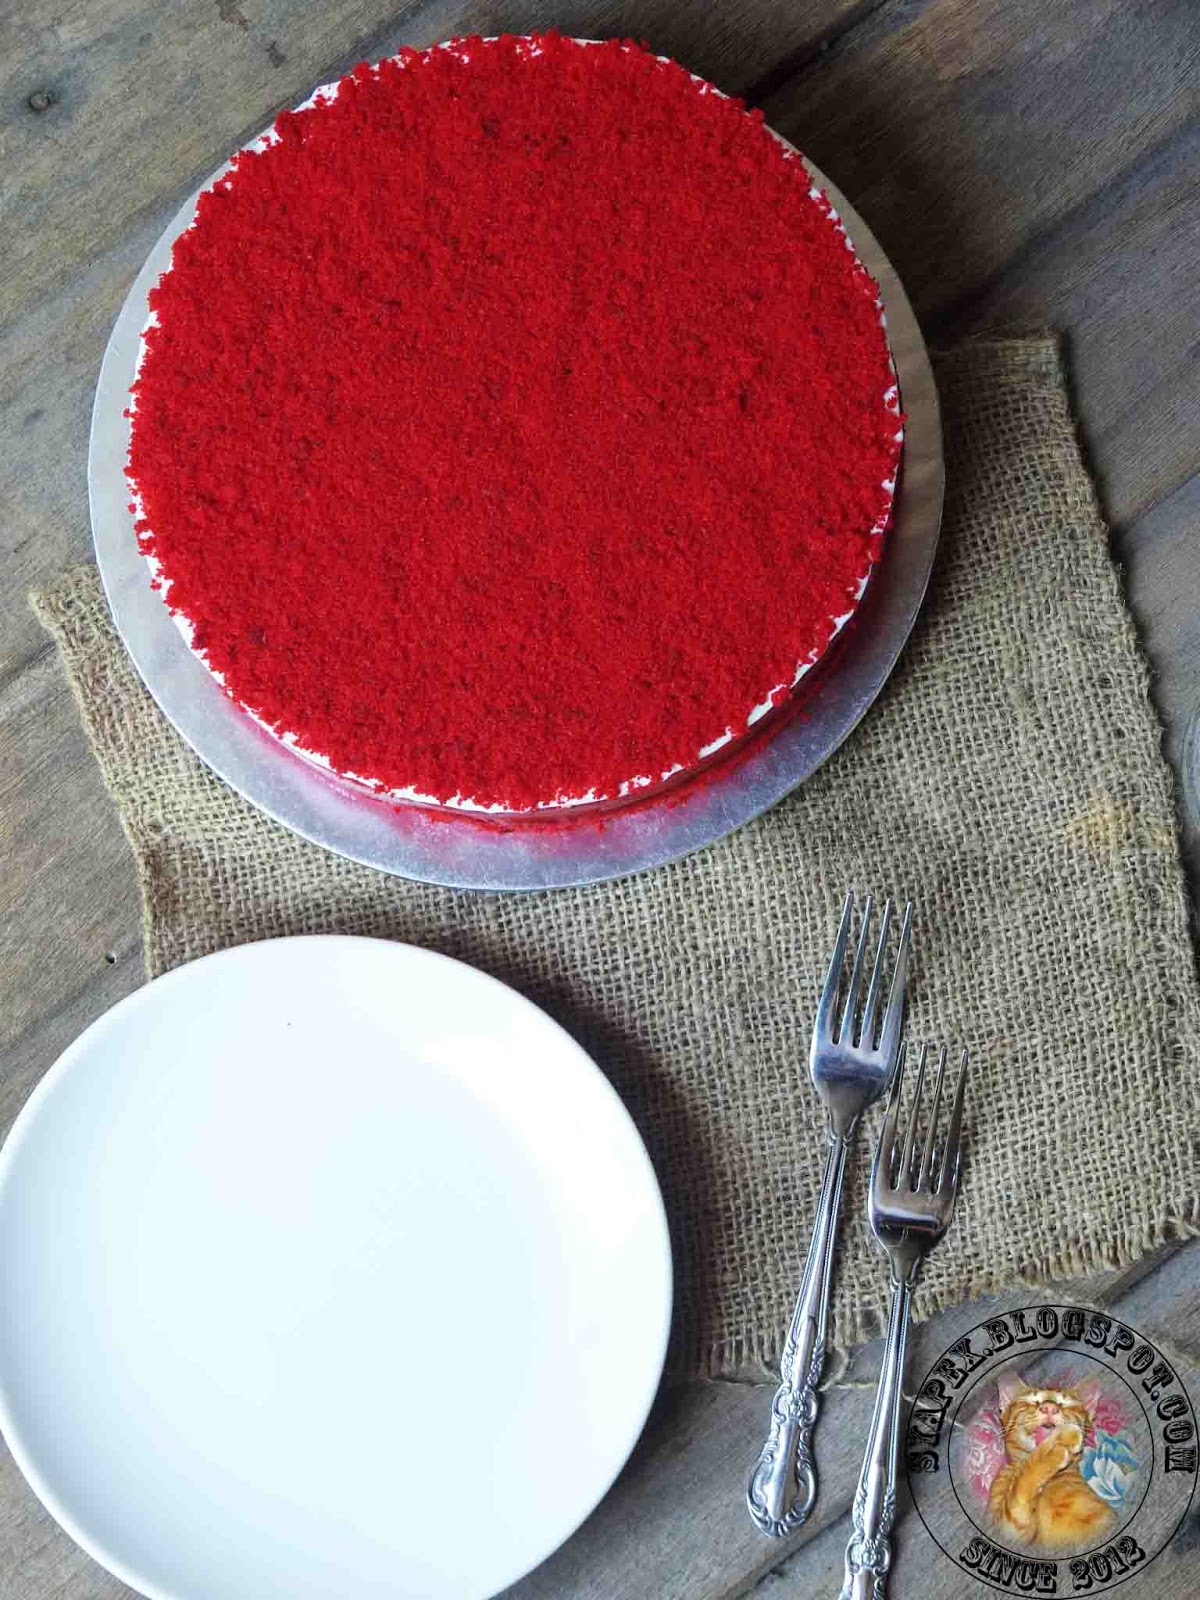 Syapex kitchen: Red Velvet Mousse Cake